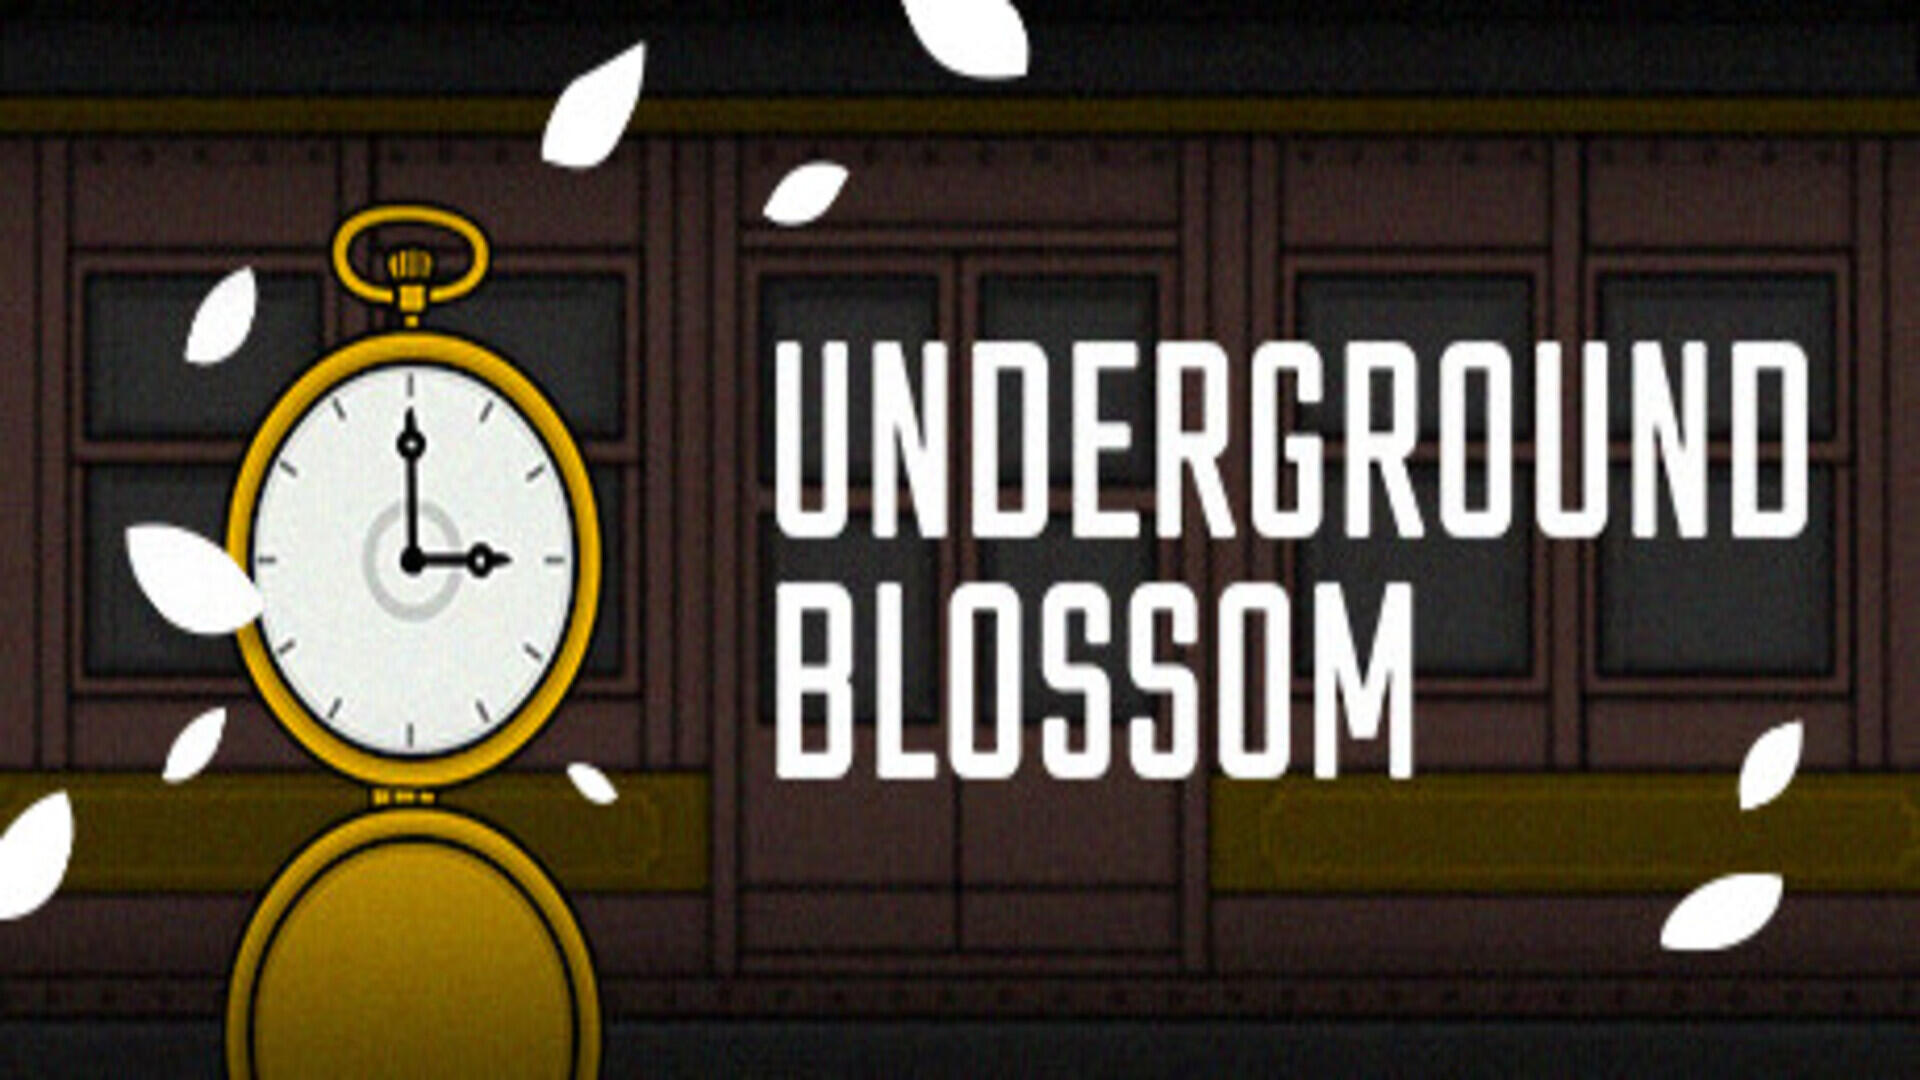 Underground Blossom – Free Download (Build 12318178)